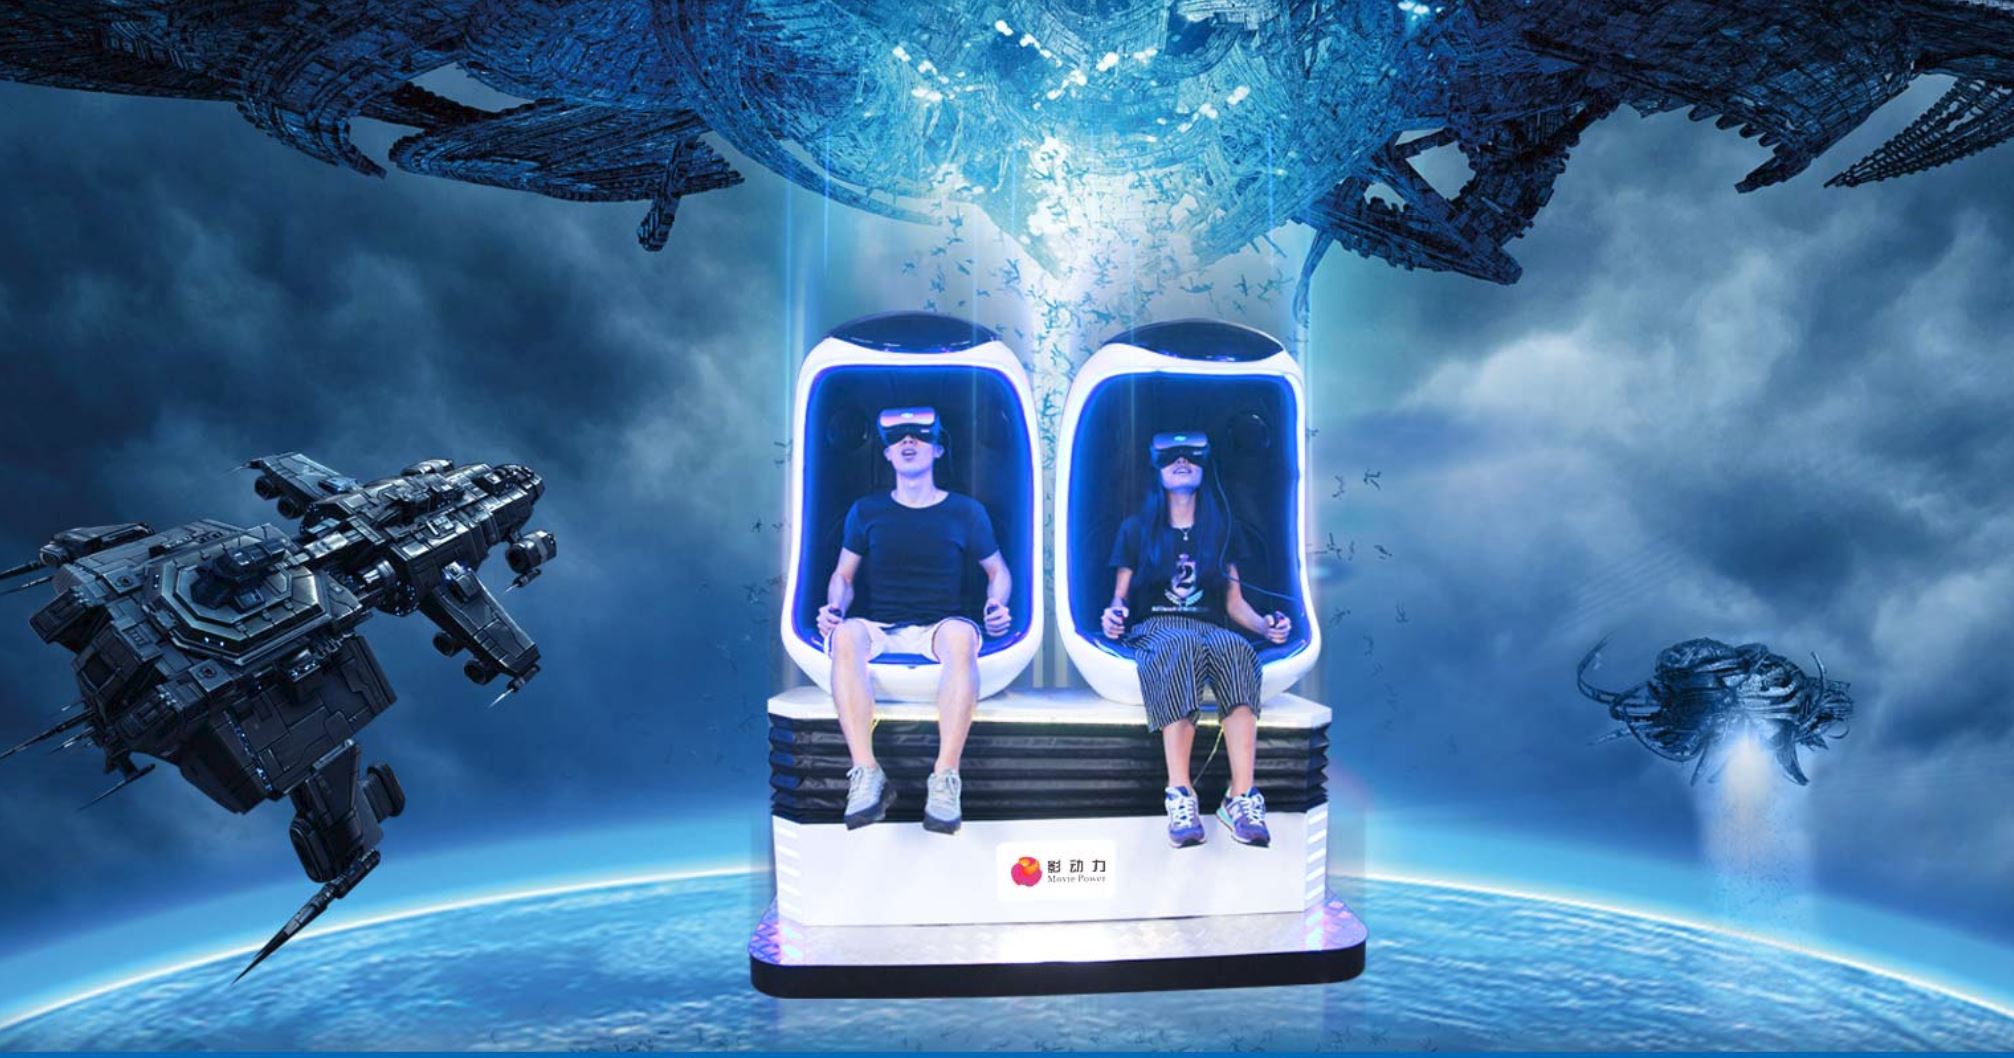 Movie Power bietet kompakte VR-Hardware für Schausteller und Kinos